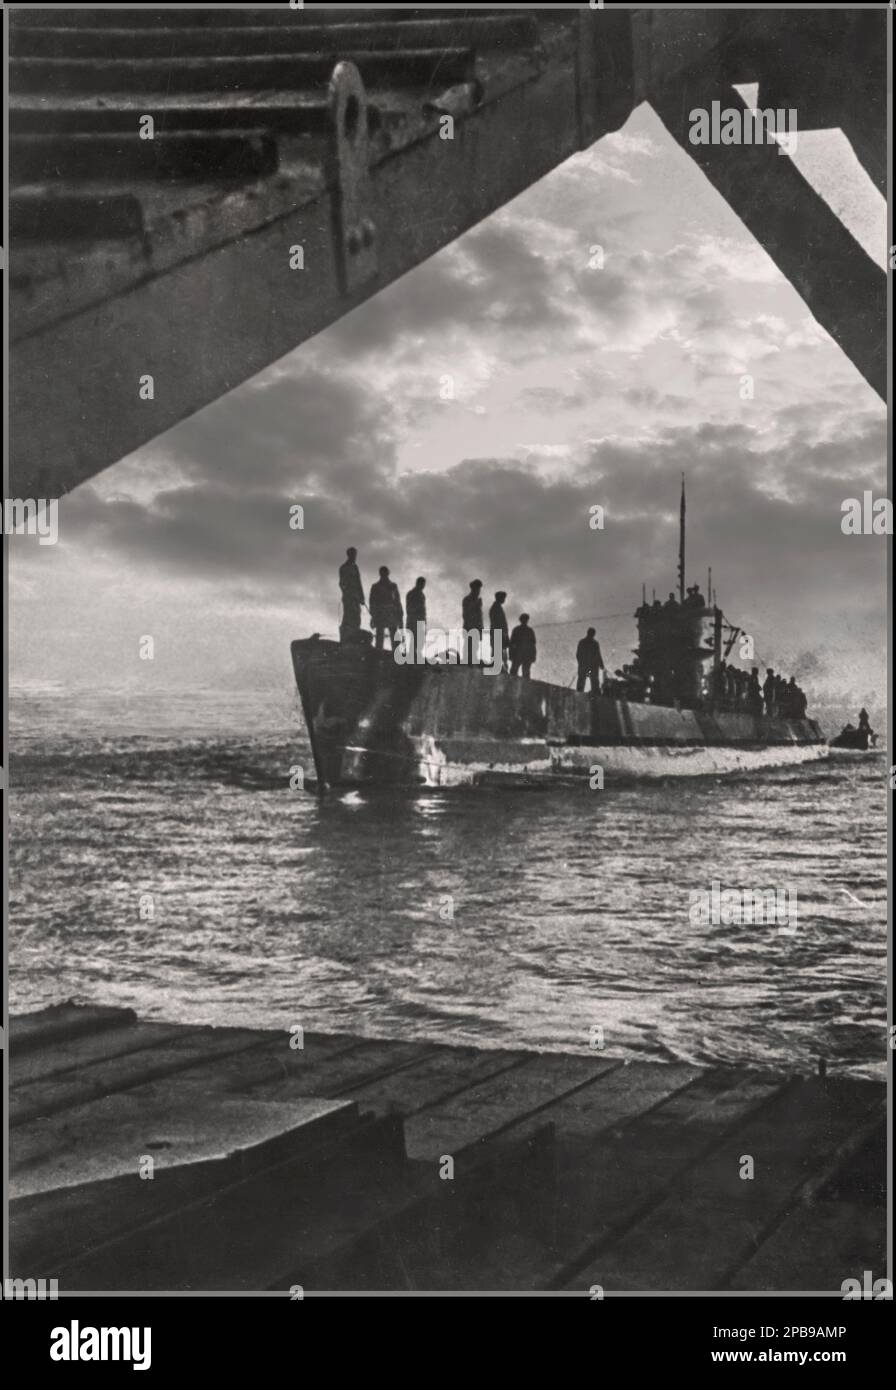 U-Boot Nazi Kriegsmarine WW2 deutsches U-Boot fährt in den Nazi-Deutschland U-Boot U-Boot Stützpunkt in Flensburg ein, eine Stadt an der Spitze des Flensburger Fjords in Norddeutschland. Auf dem oberen Deck des U-Boats können Seeleute stehen. Datum Februar 1943 WW2 Zweiter Weltkrieg Zweiter Weltkrieg Stockfoto